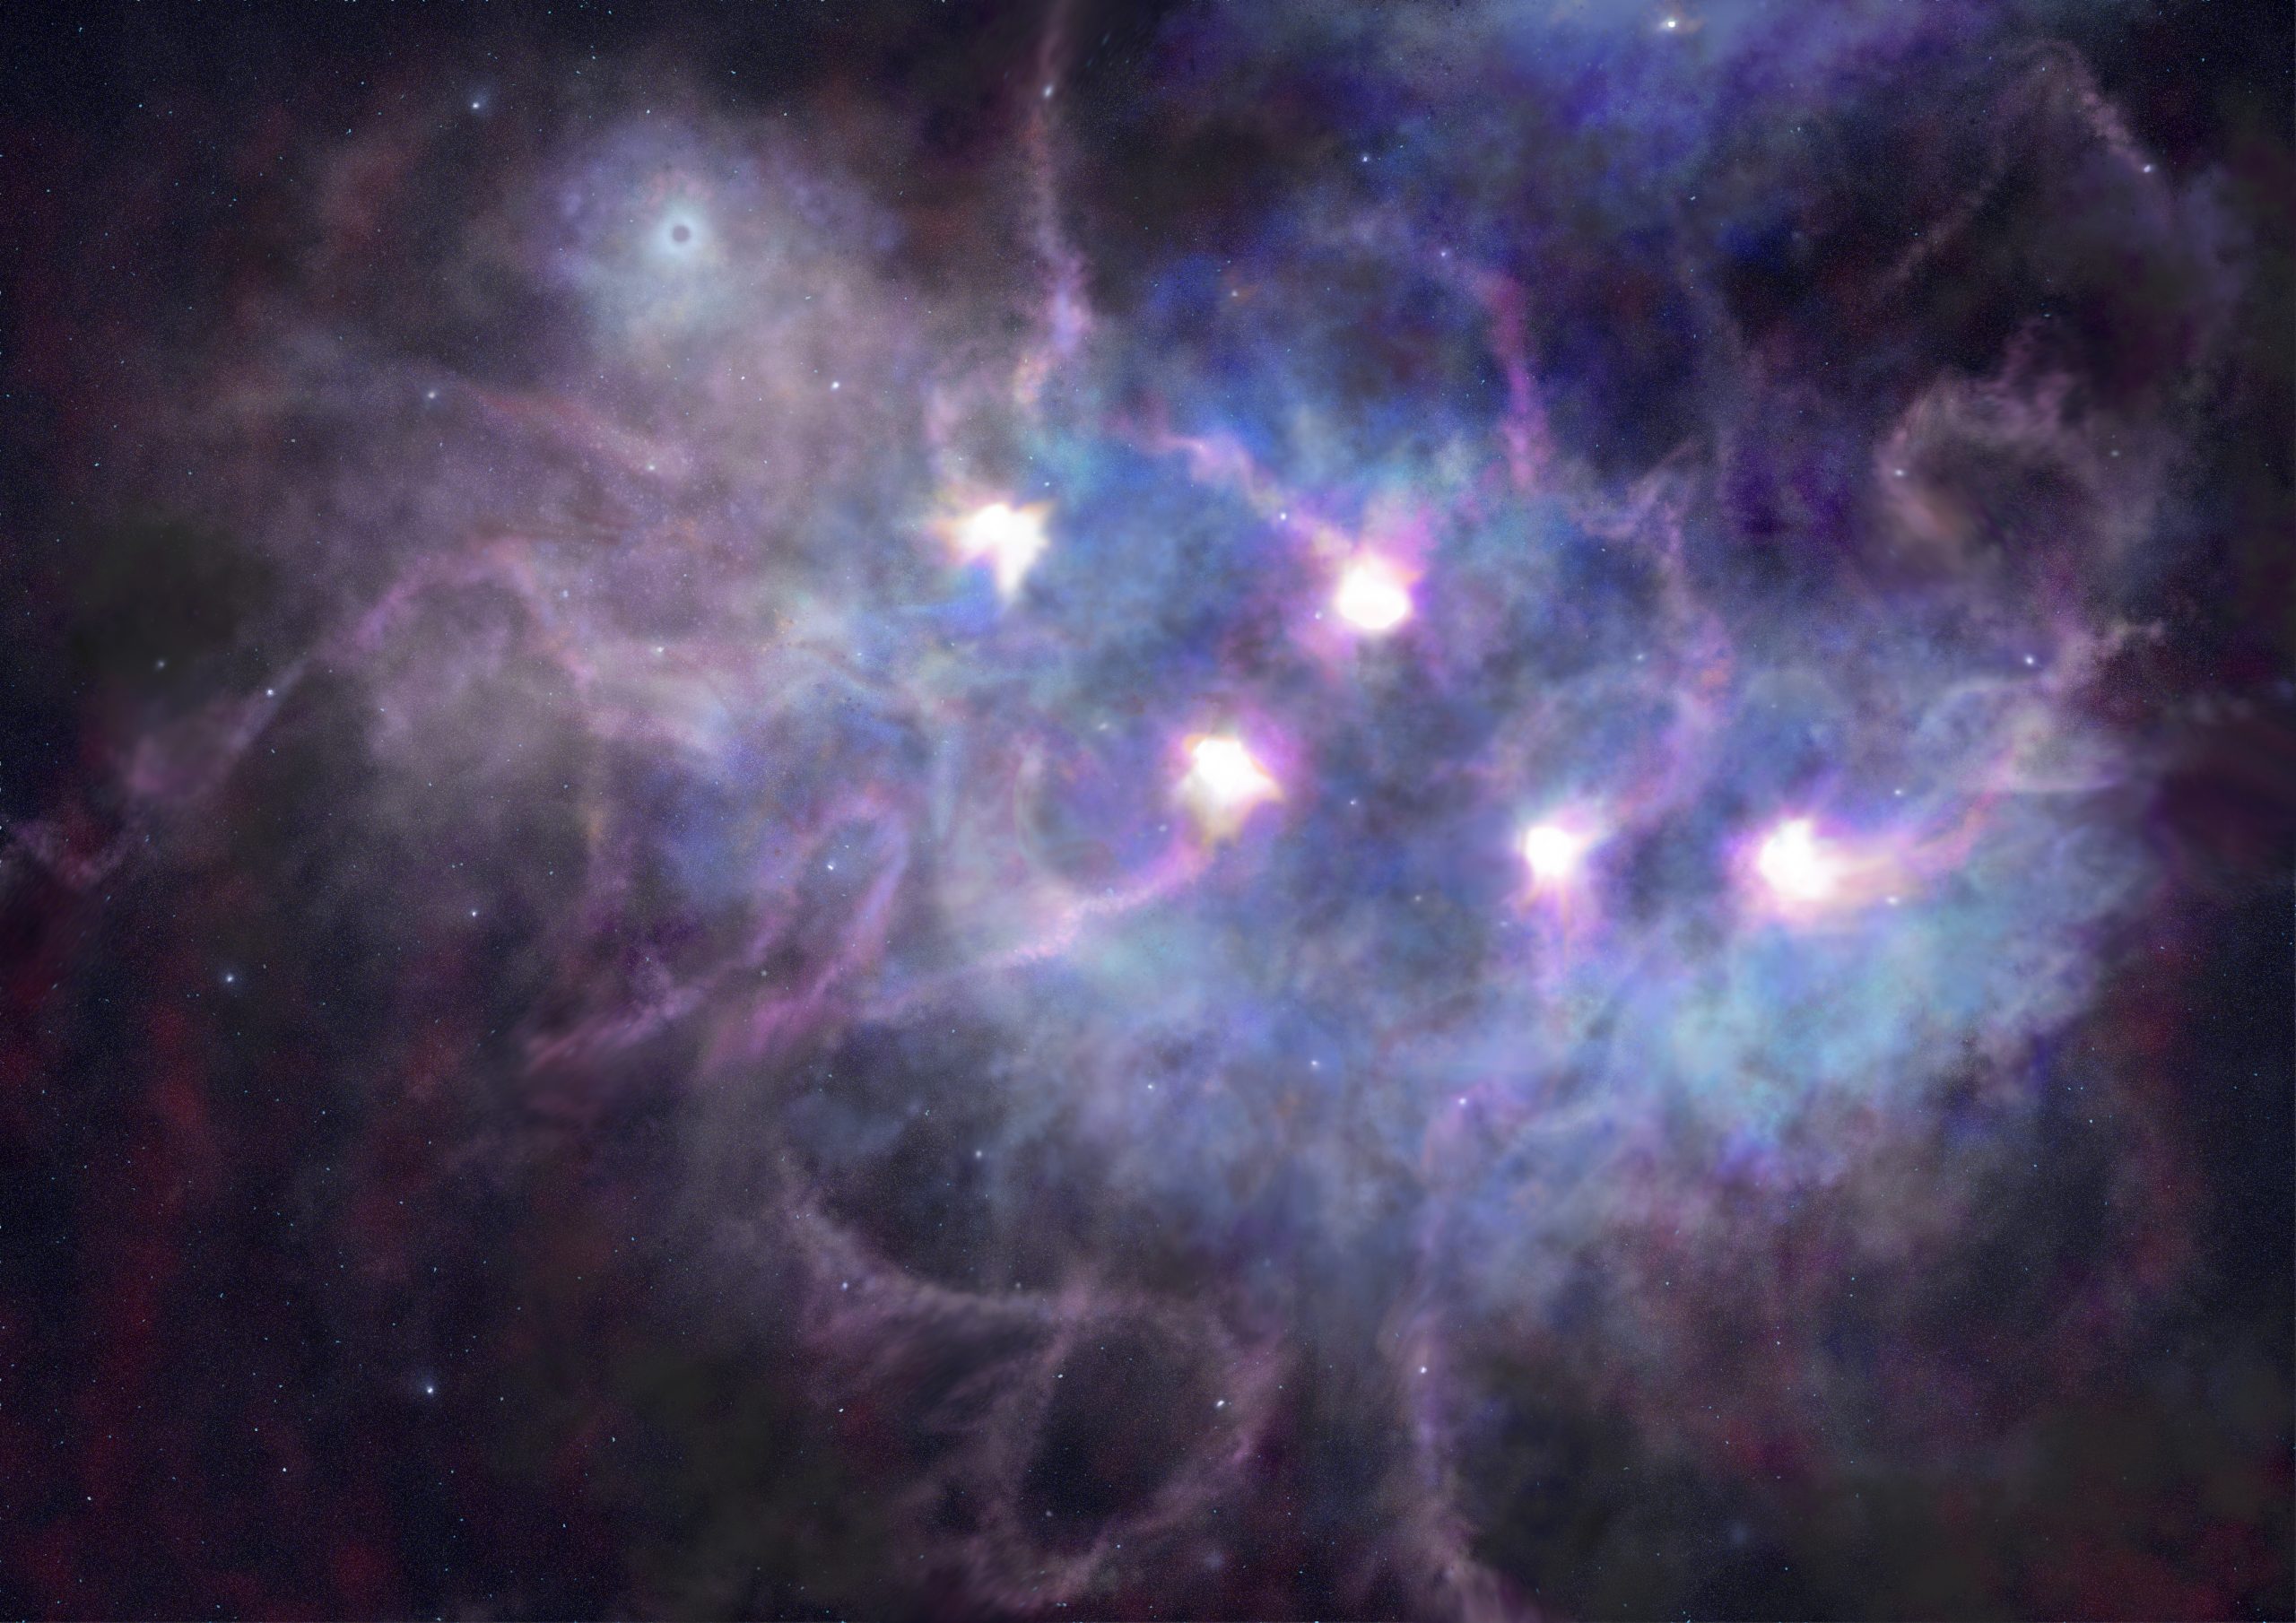 プレスリリース 銀河系内で最強の宇宙線源の候補を発見 超新星爆発の残骸 G106 3 2 7 から100tev超のガンマ線を観測 Icrr Institute For Cosmic Ray Research University Of Tokyo